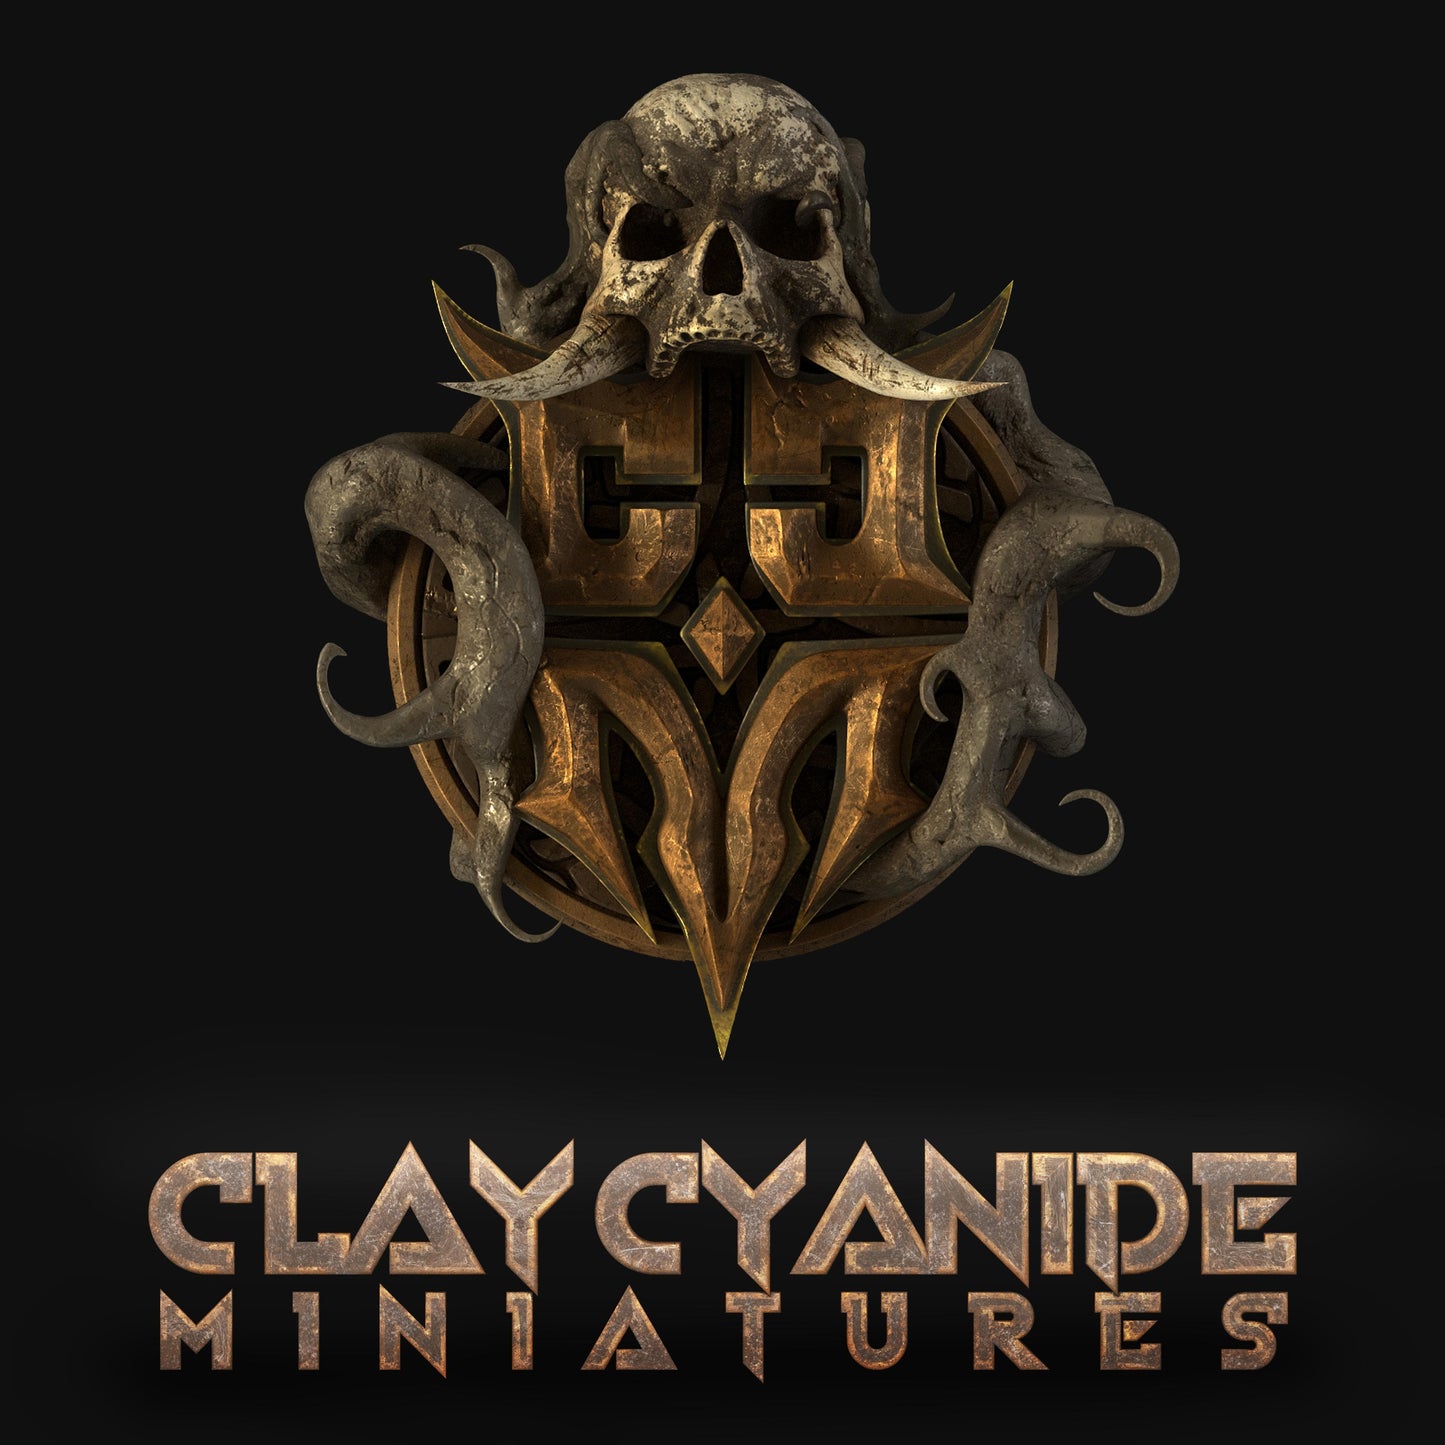 Shinobi Clay Cyanide, Resin Miniature